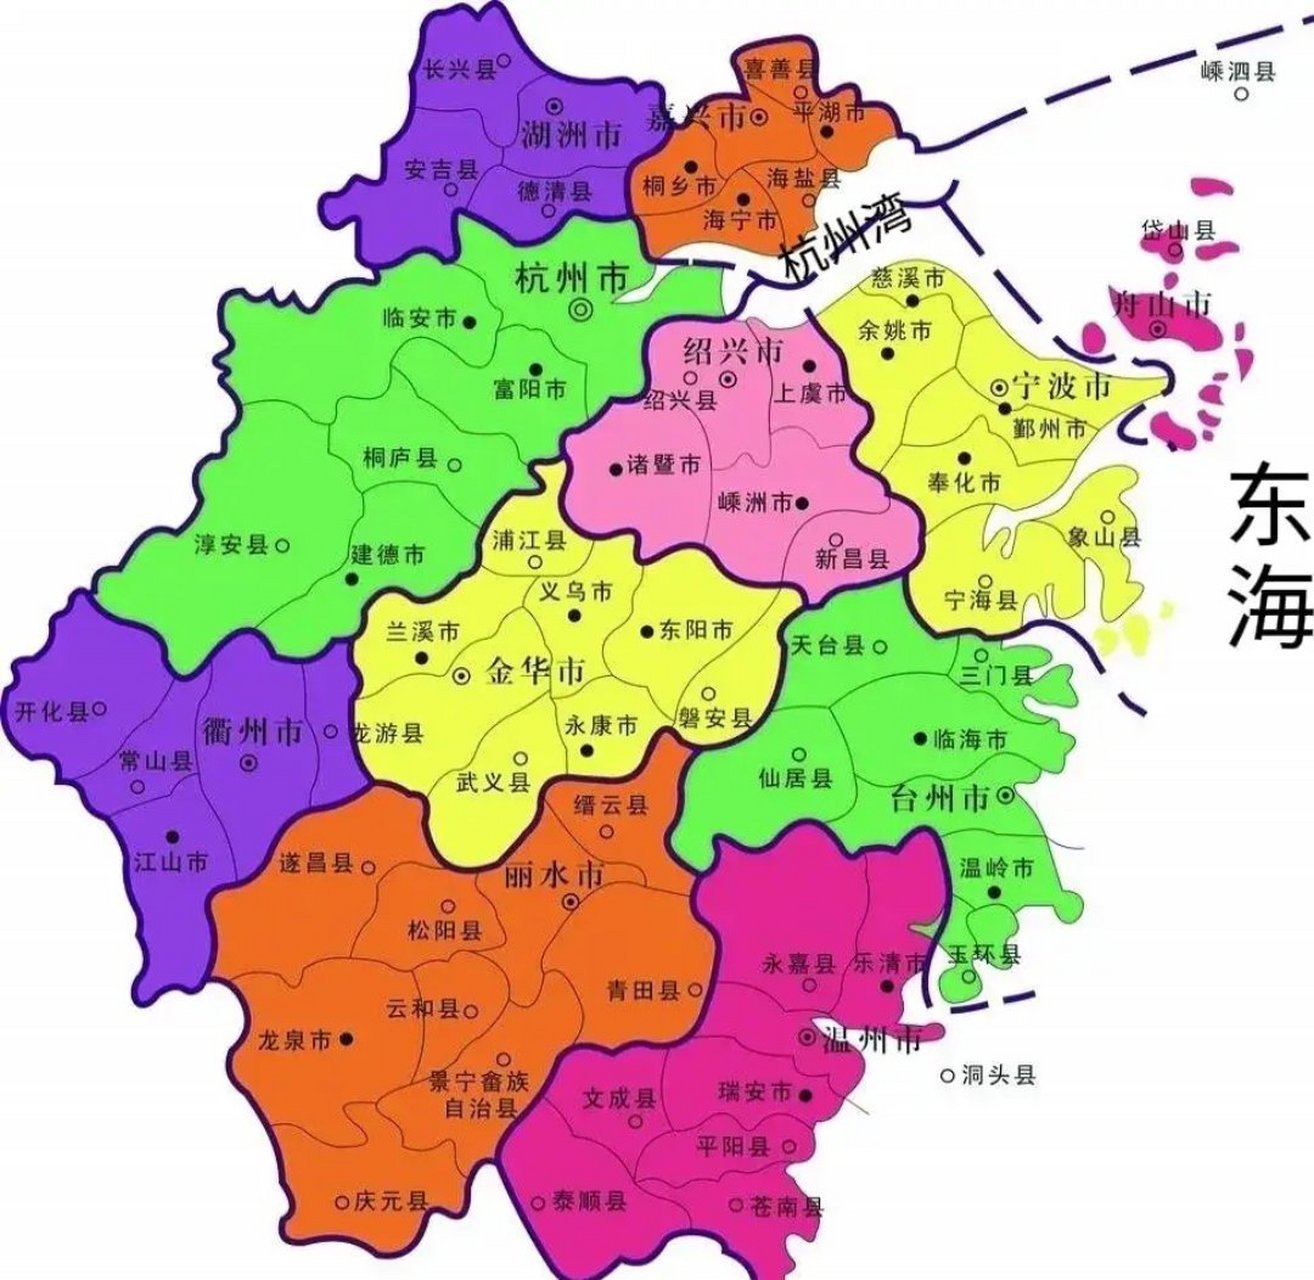 宁波超越杭州指日可待,理由: 1,地理位置宁波远比杭州优越,杭州处于